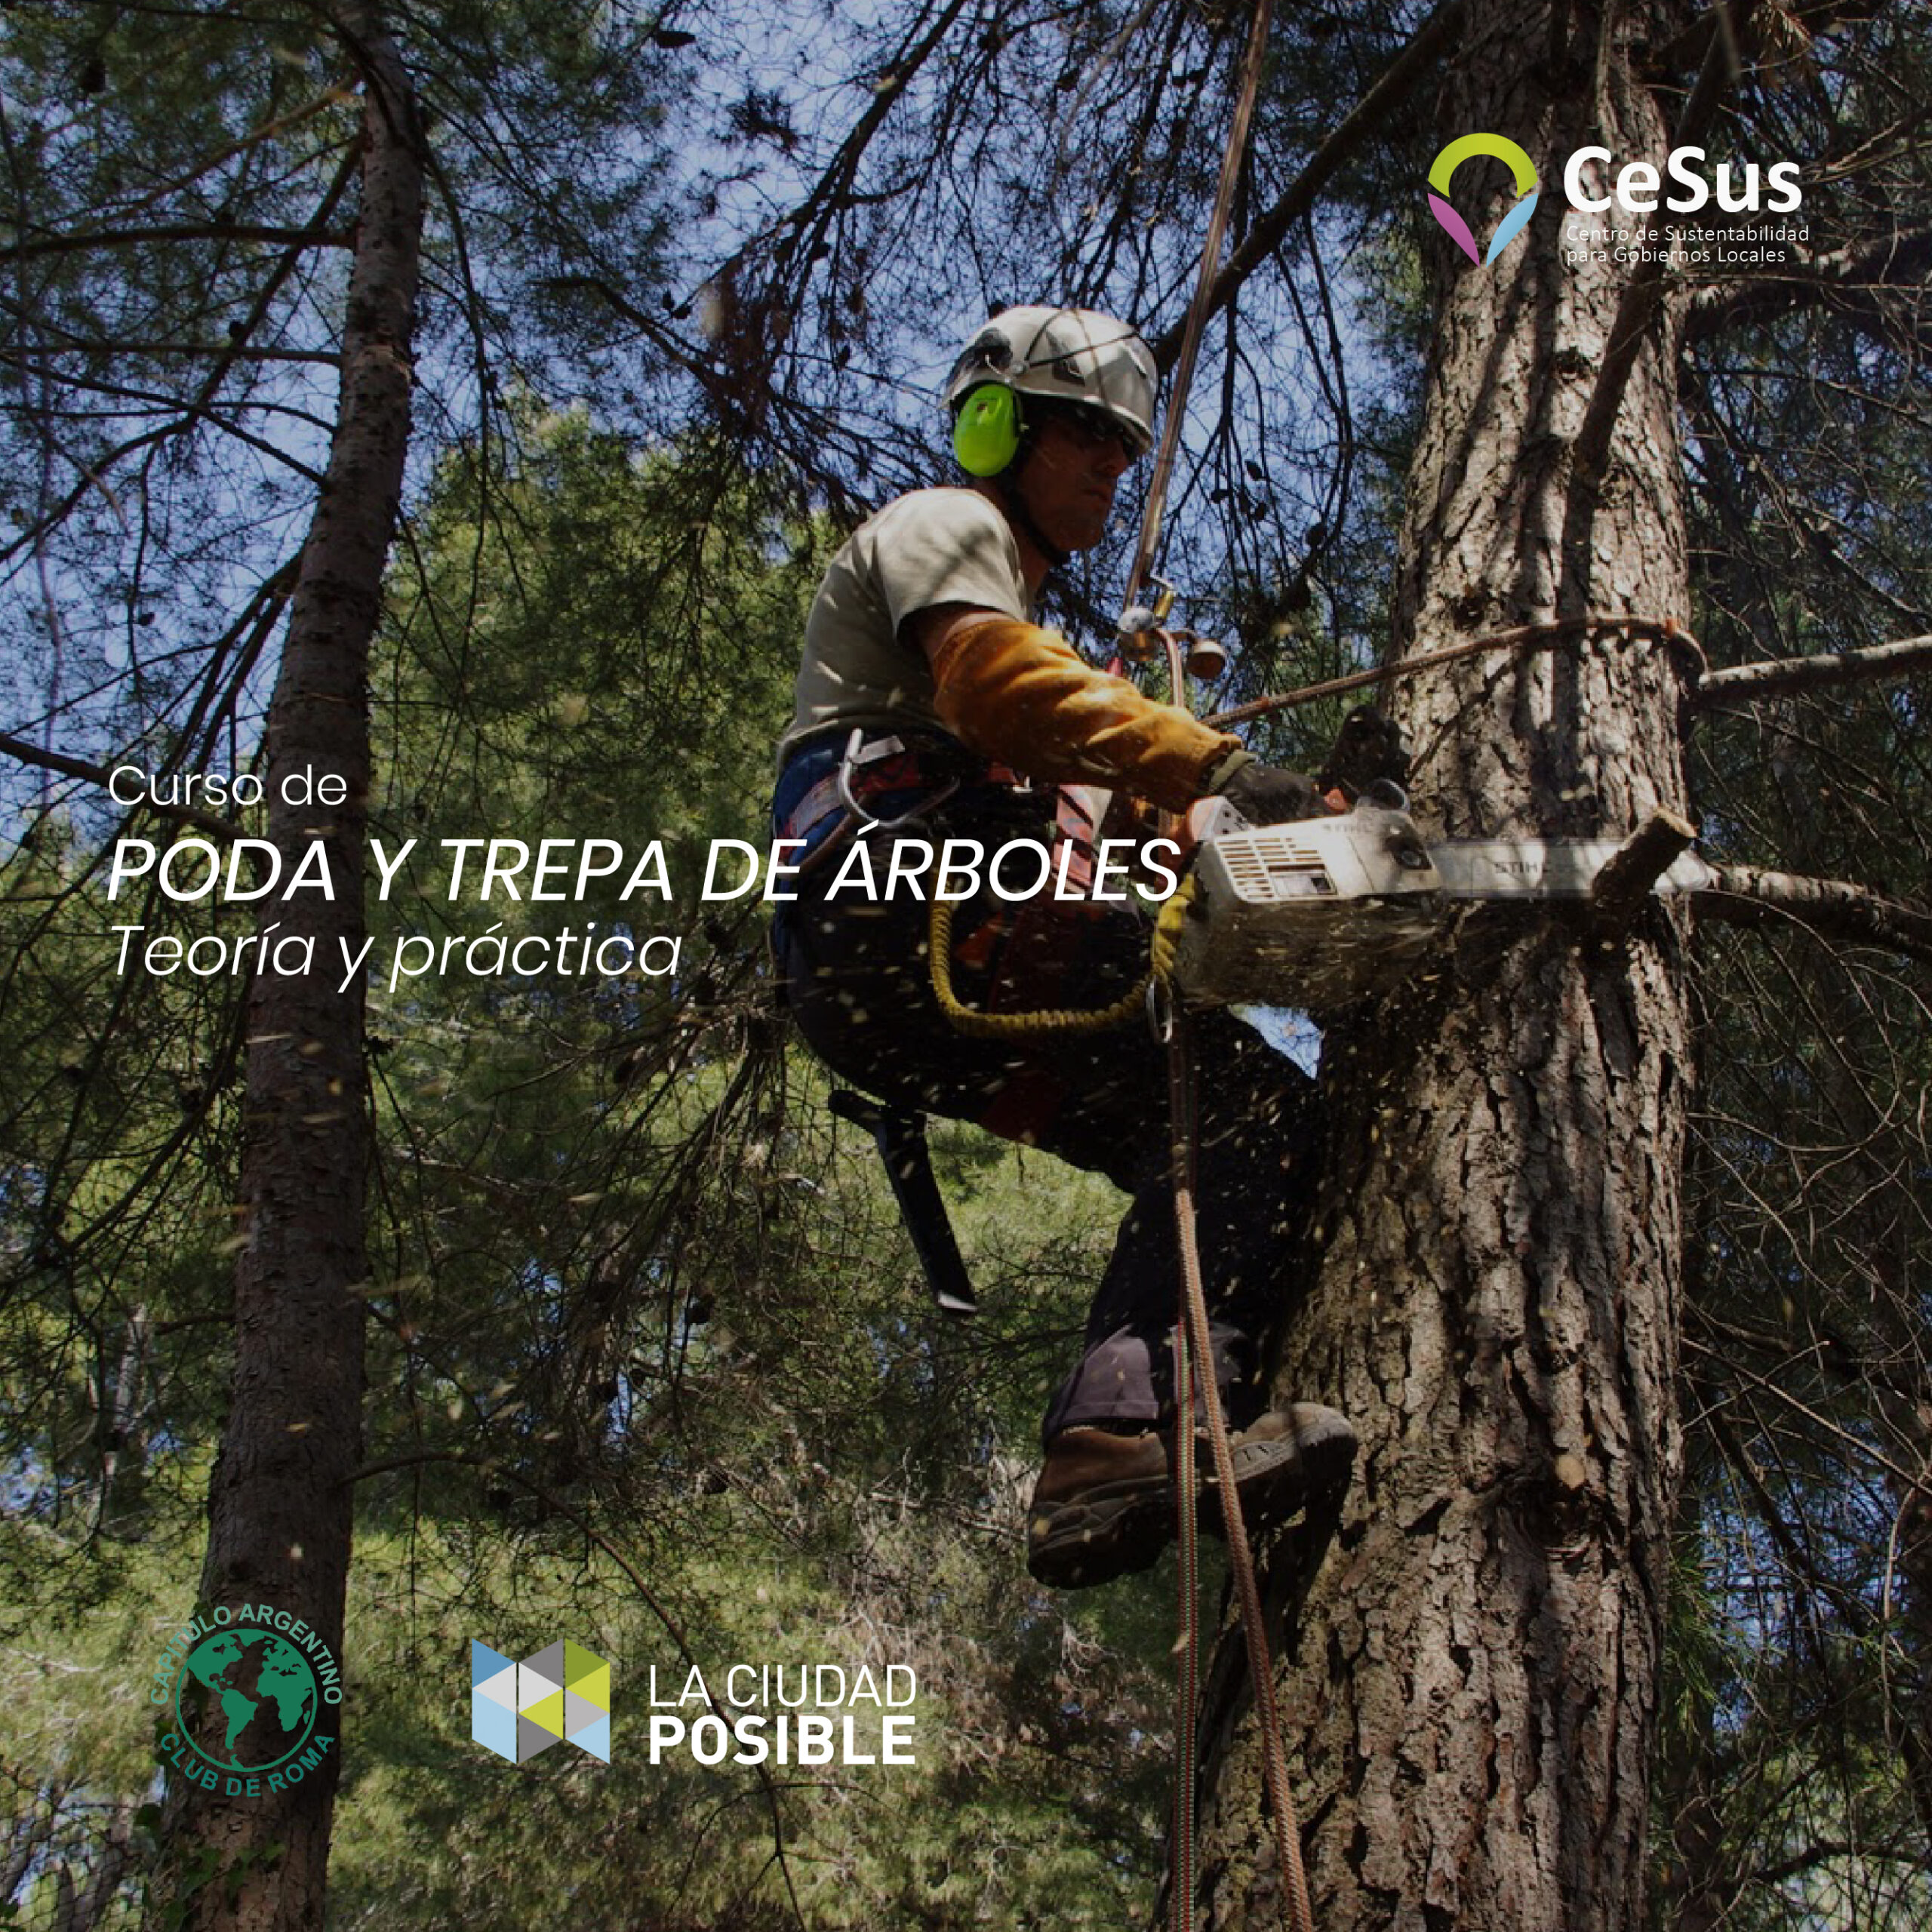 Trepa y Poda de árboles – CeSus